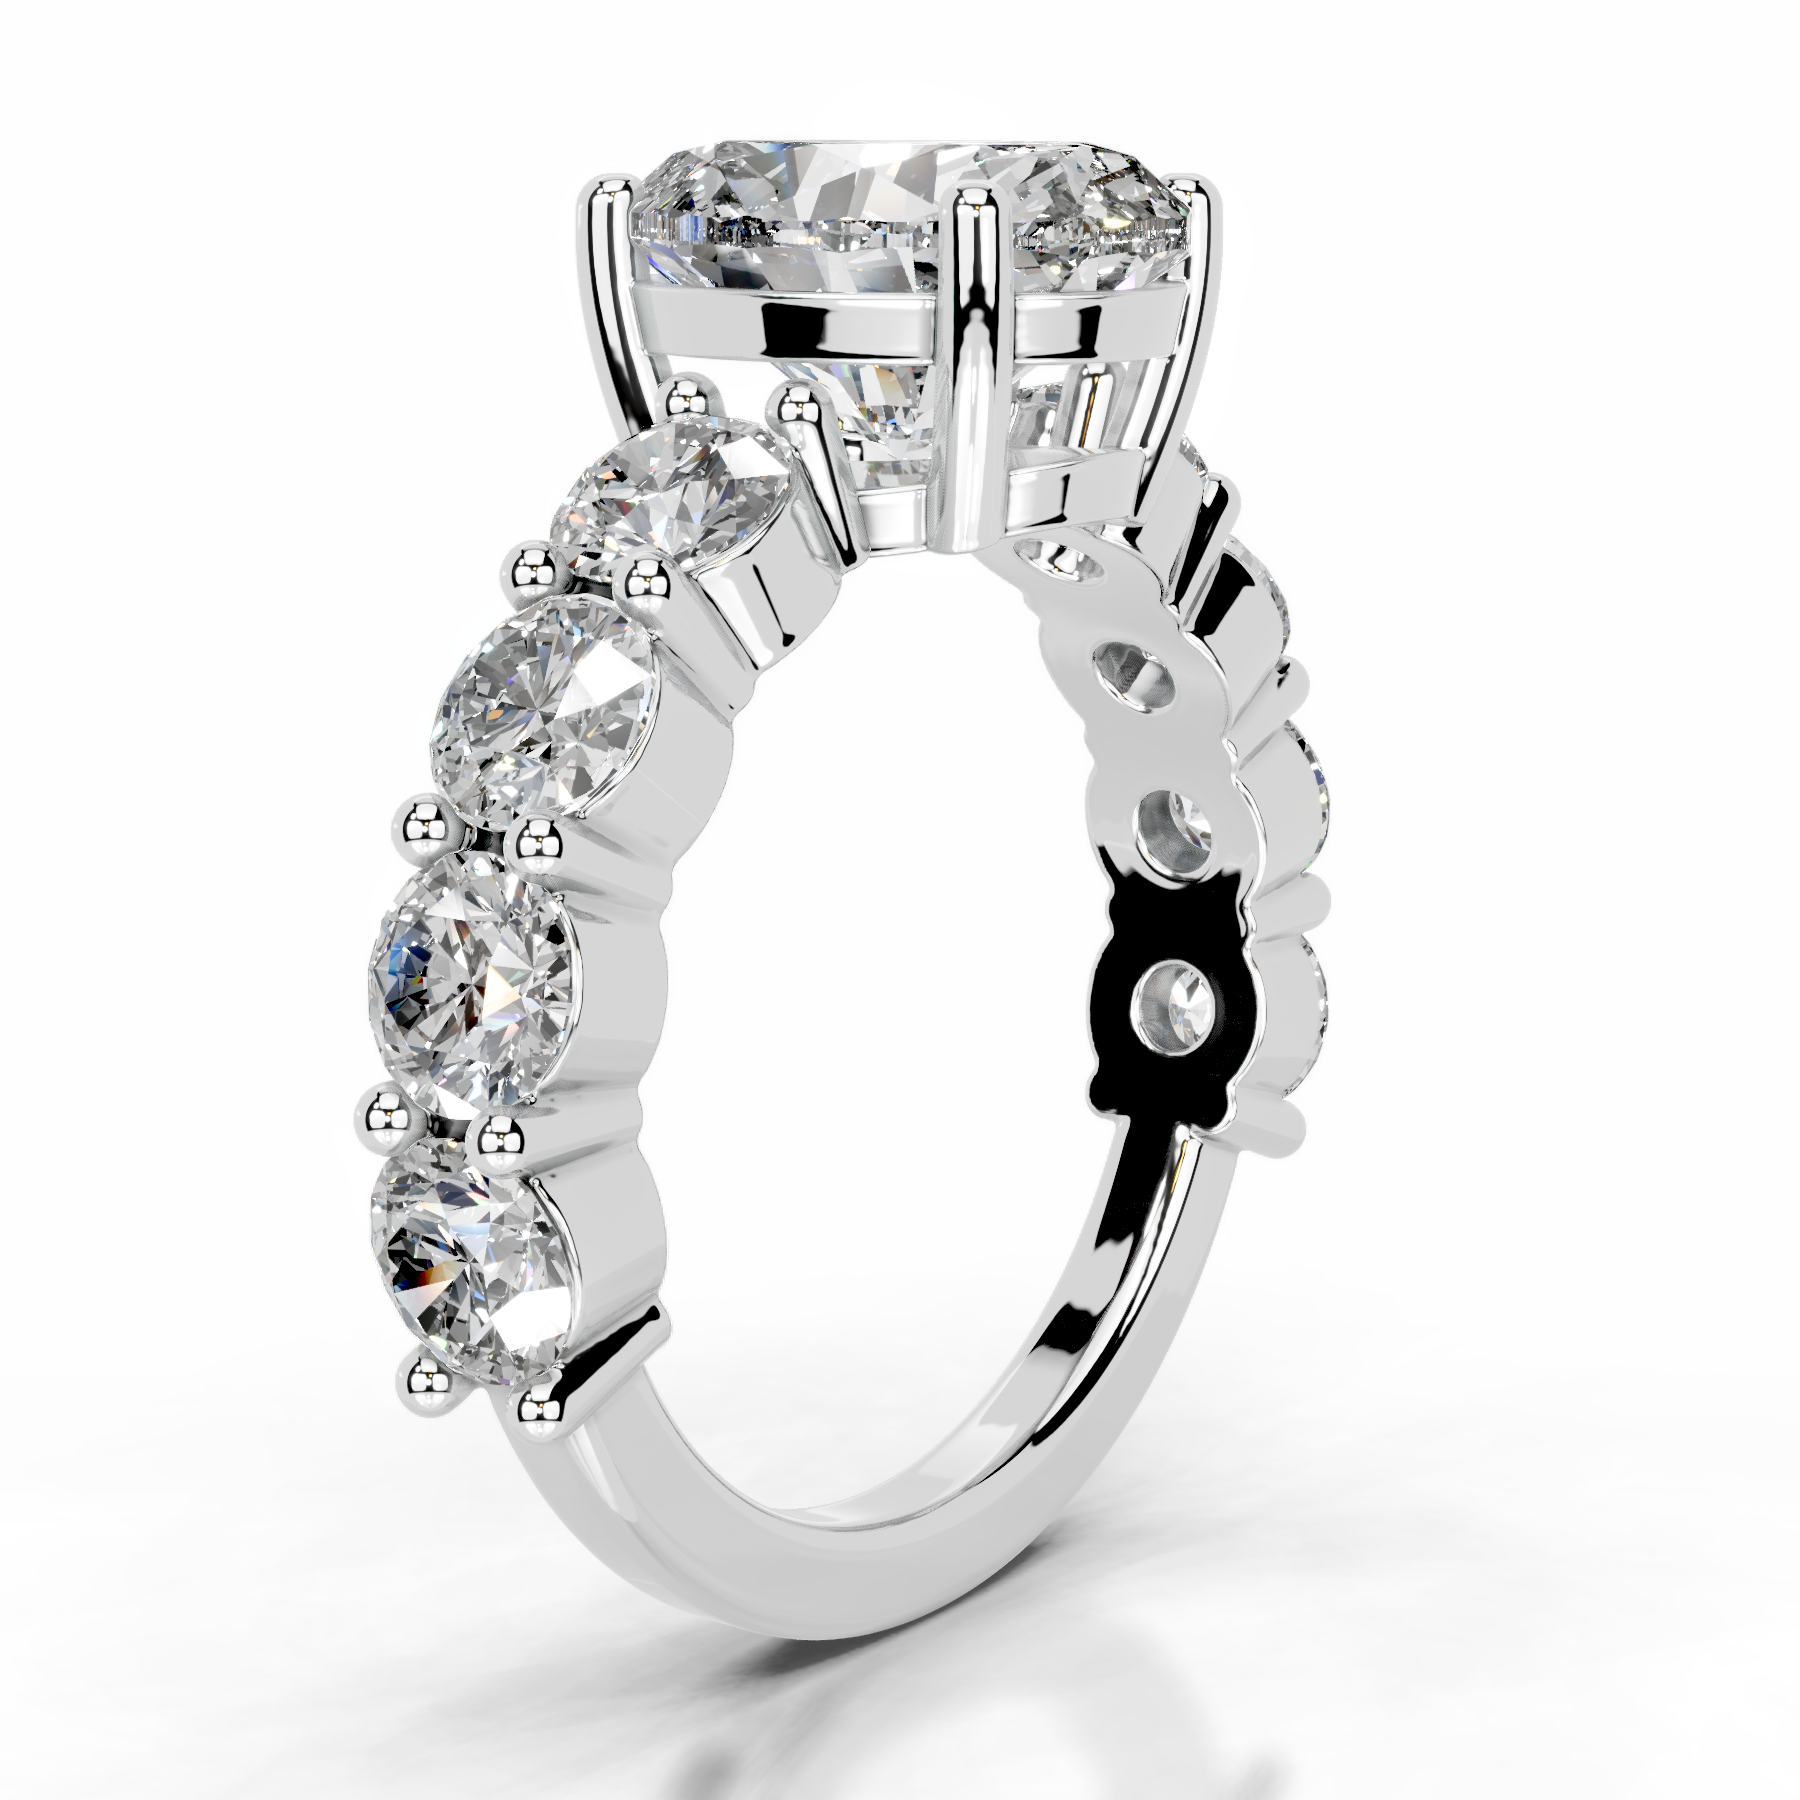 Odin Lab Grown Diamond Ring   (4 Carat) -14K White Gold